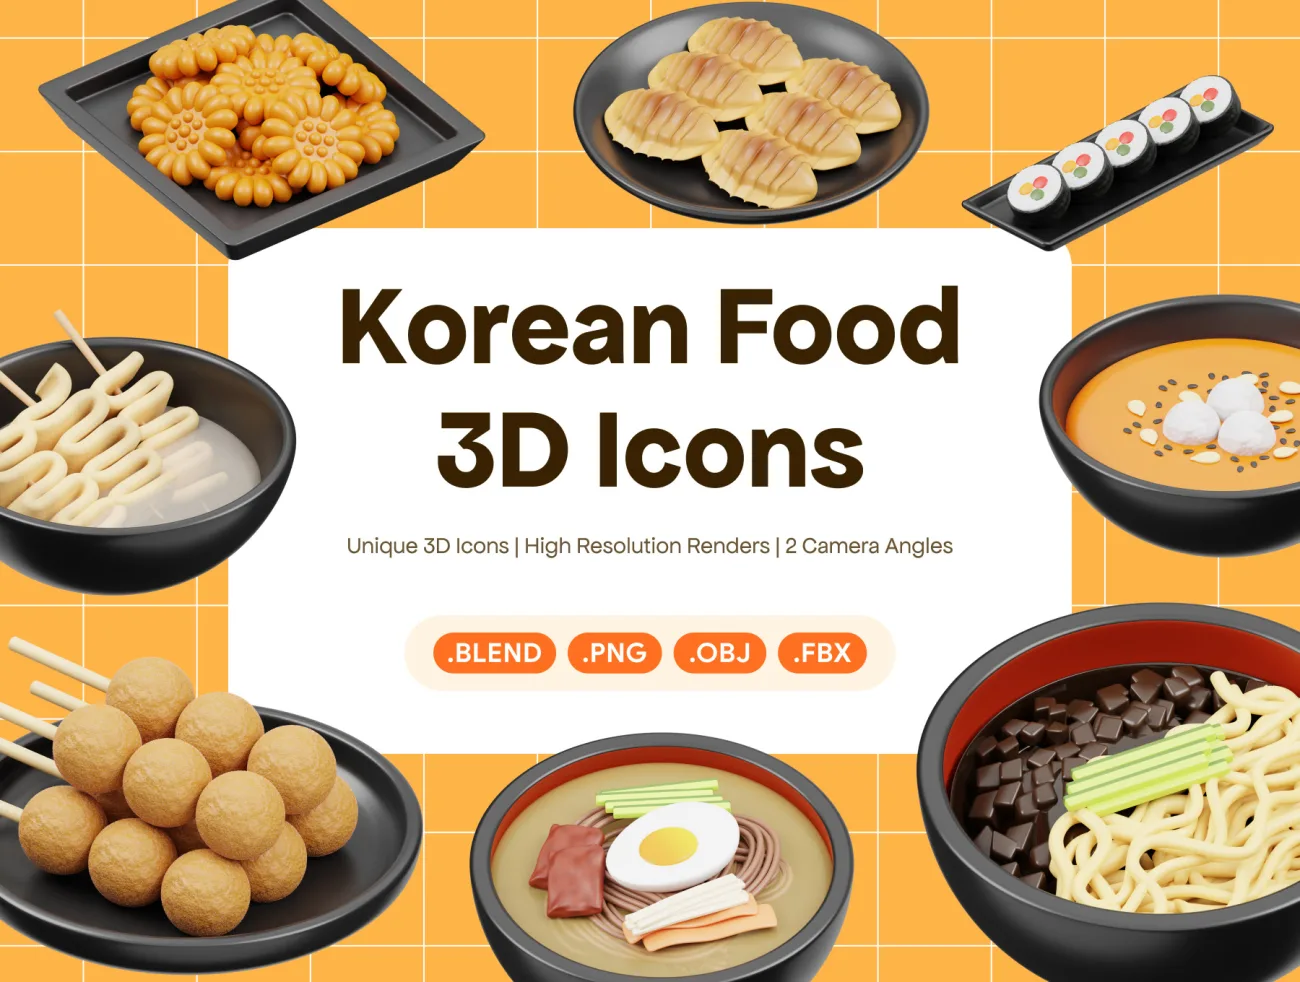 韩国食品3D图标 Korean Food 3D Icon缩略图到位啦UI